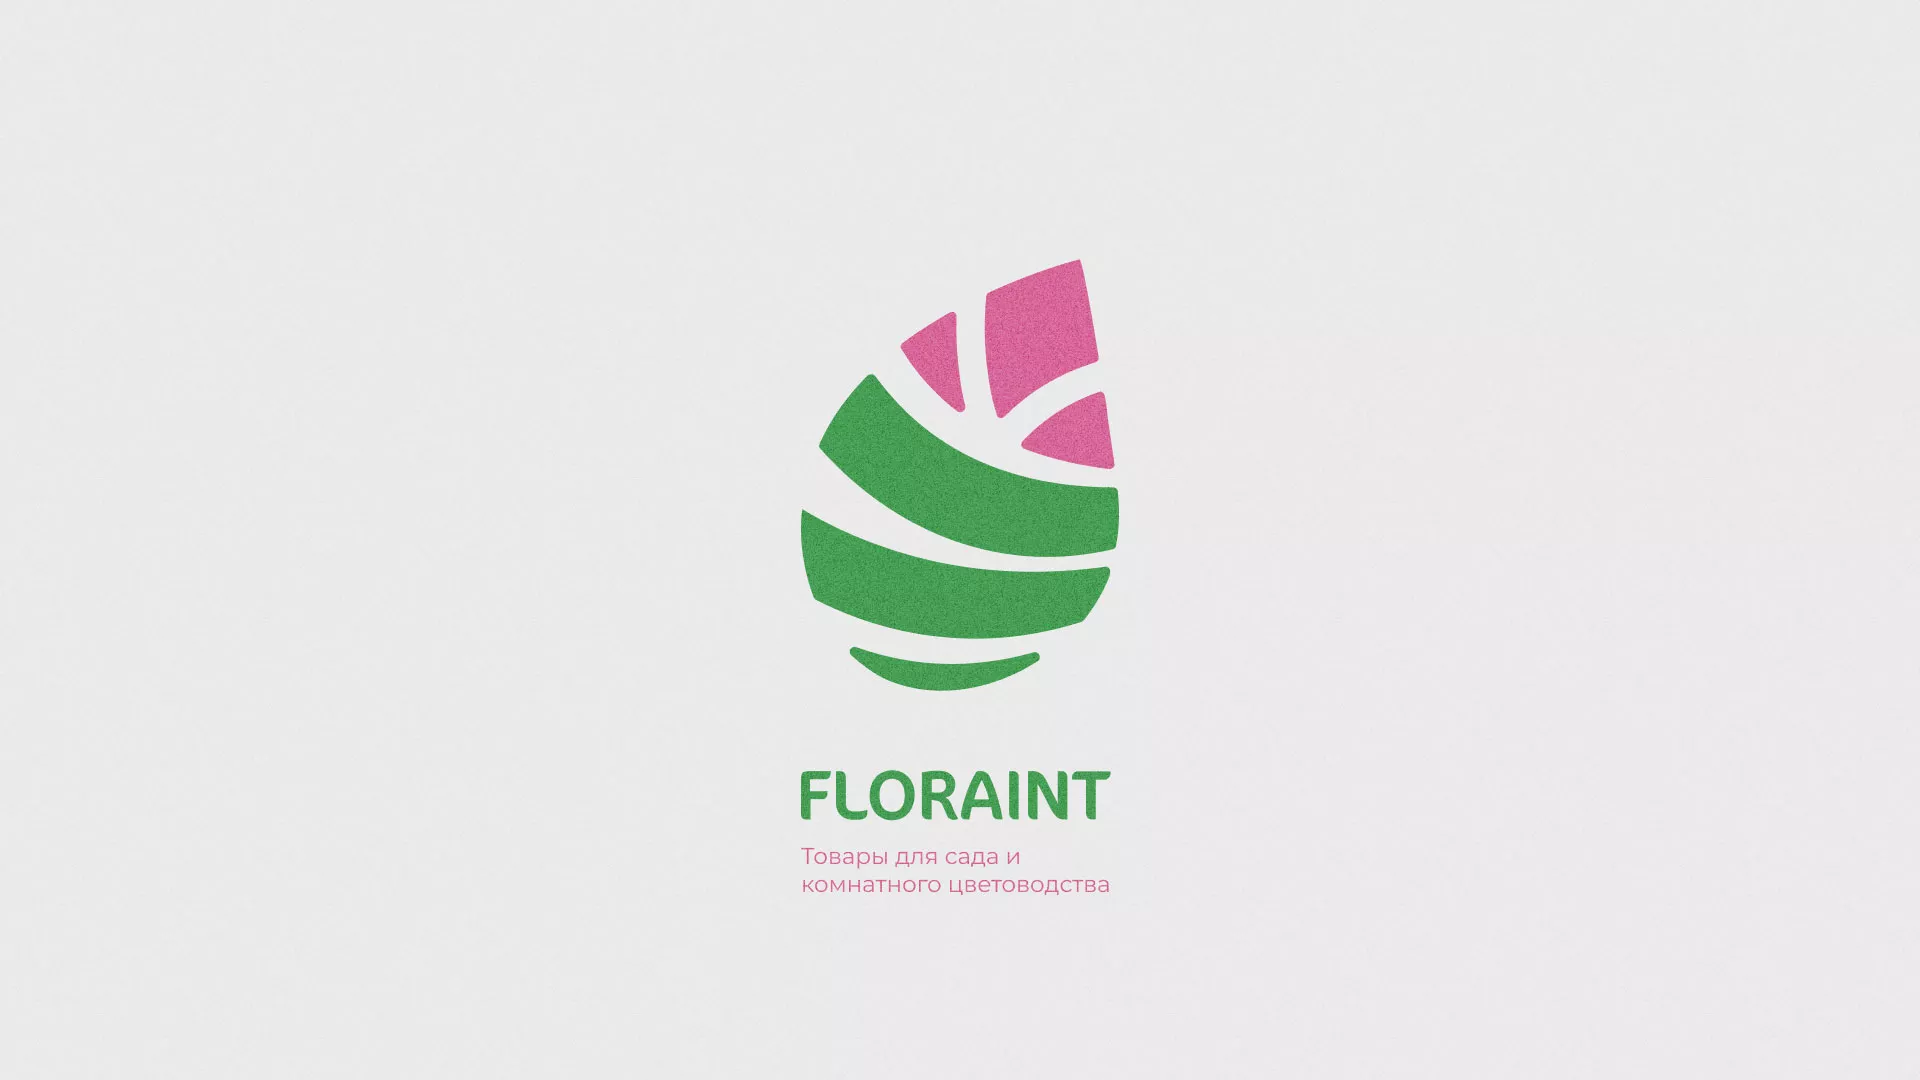 Разработка оформления профиля Instagram для магазина «Floraint» в Пскове